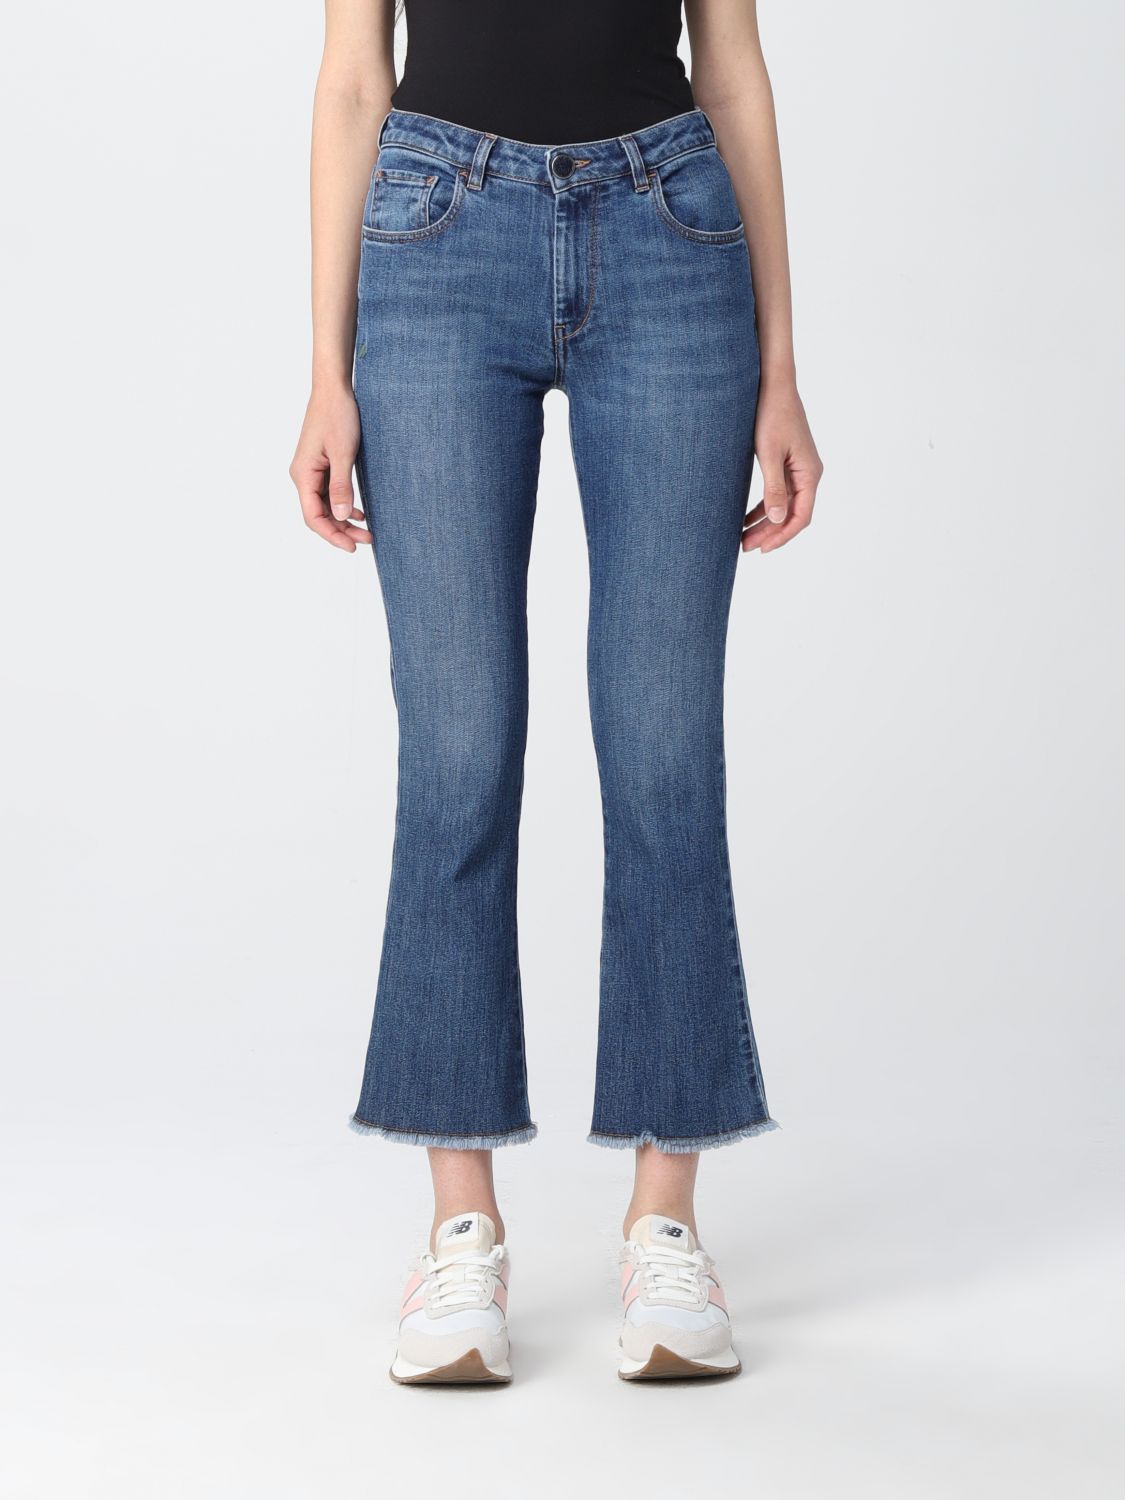 Jeans Re-Hash: Re-Hash Damen jeans blau 1